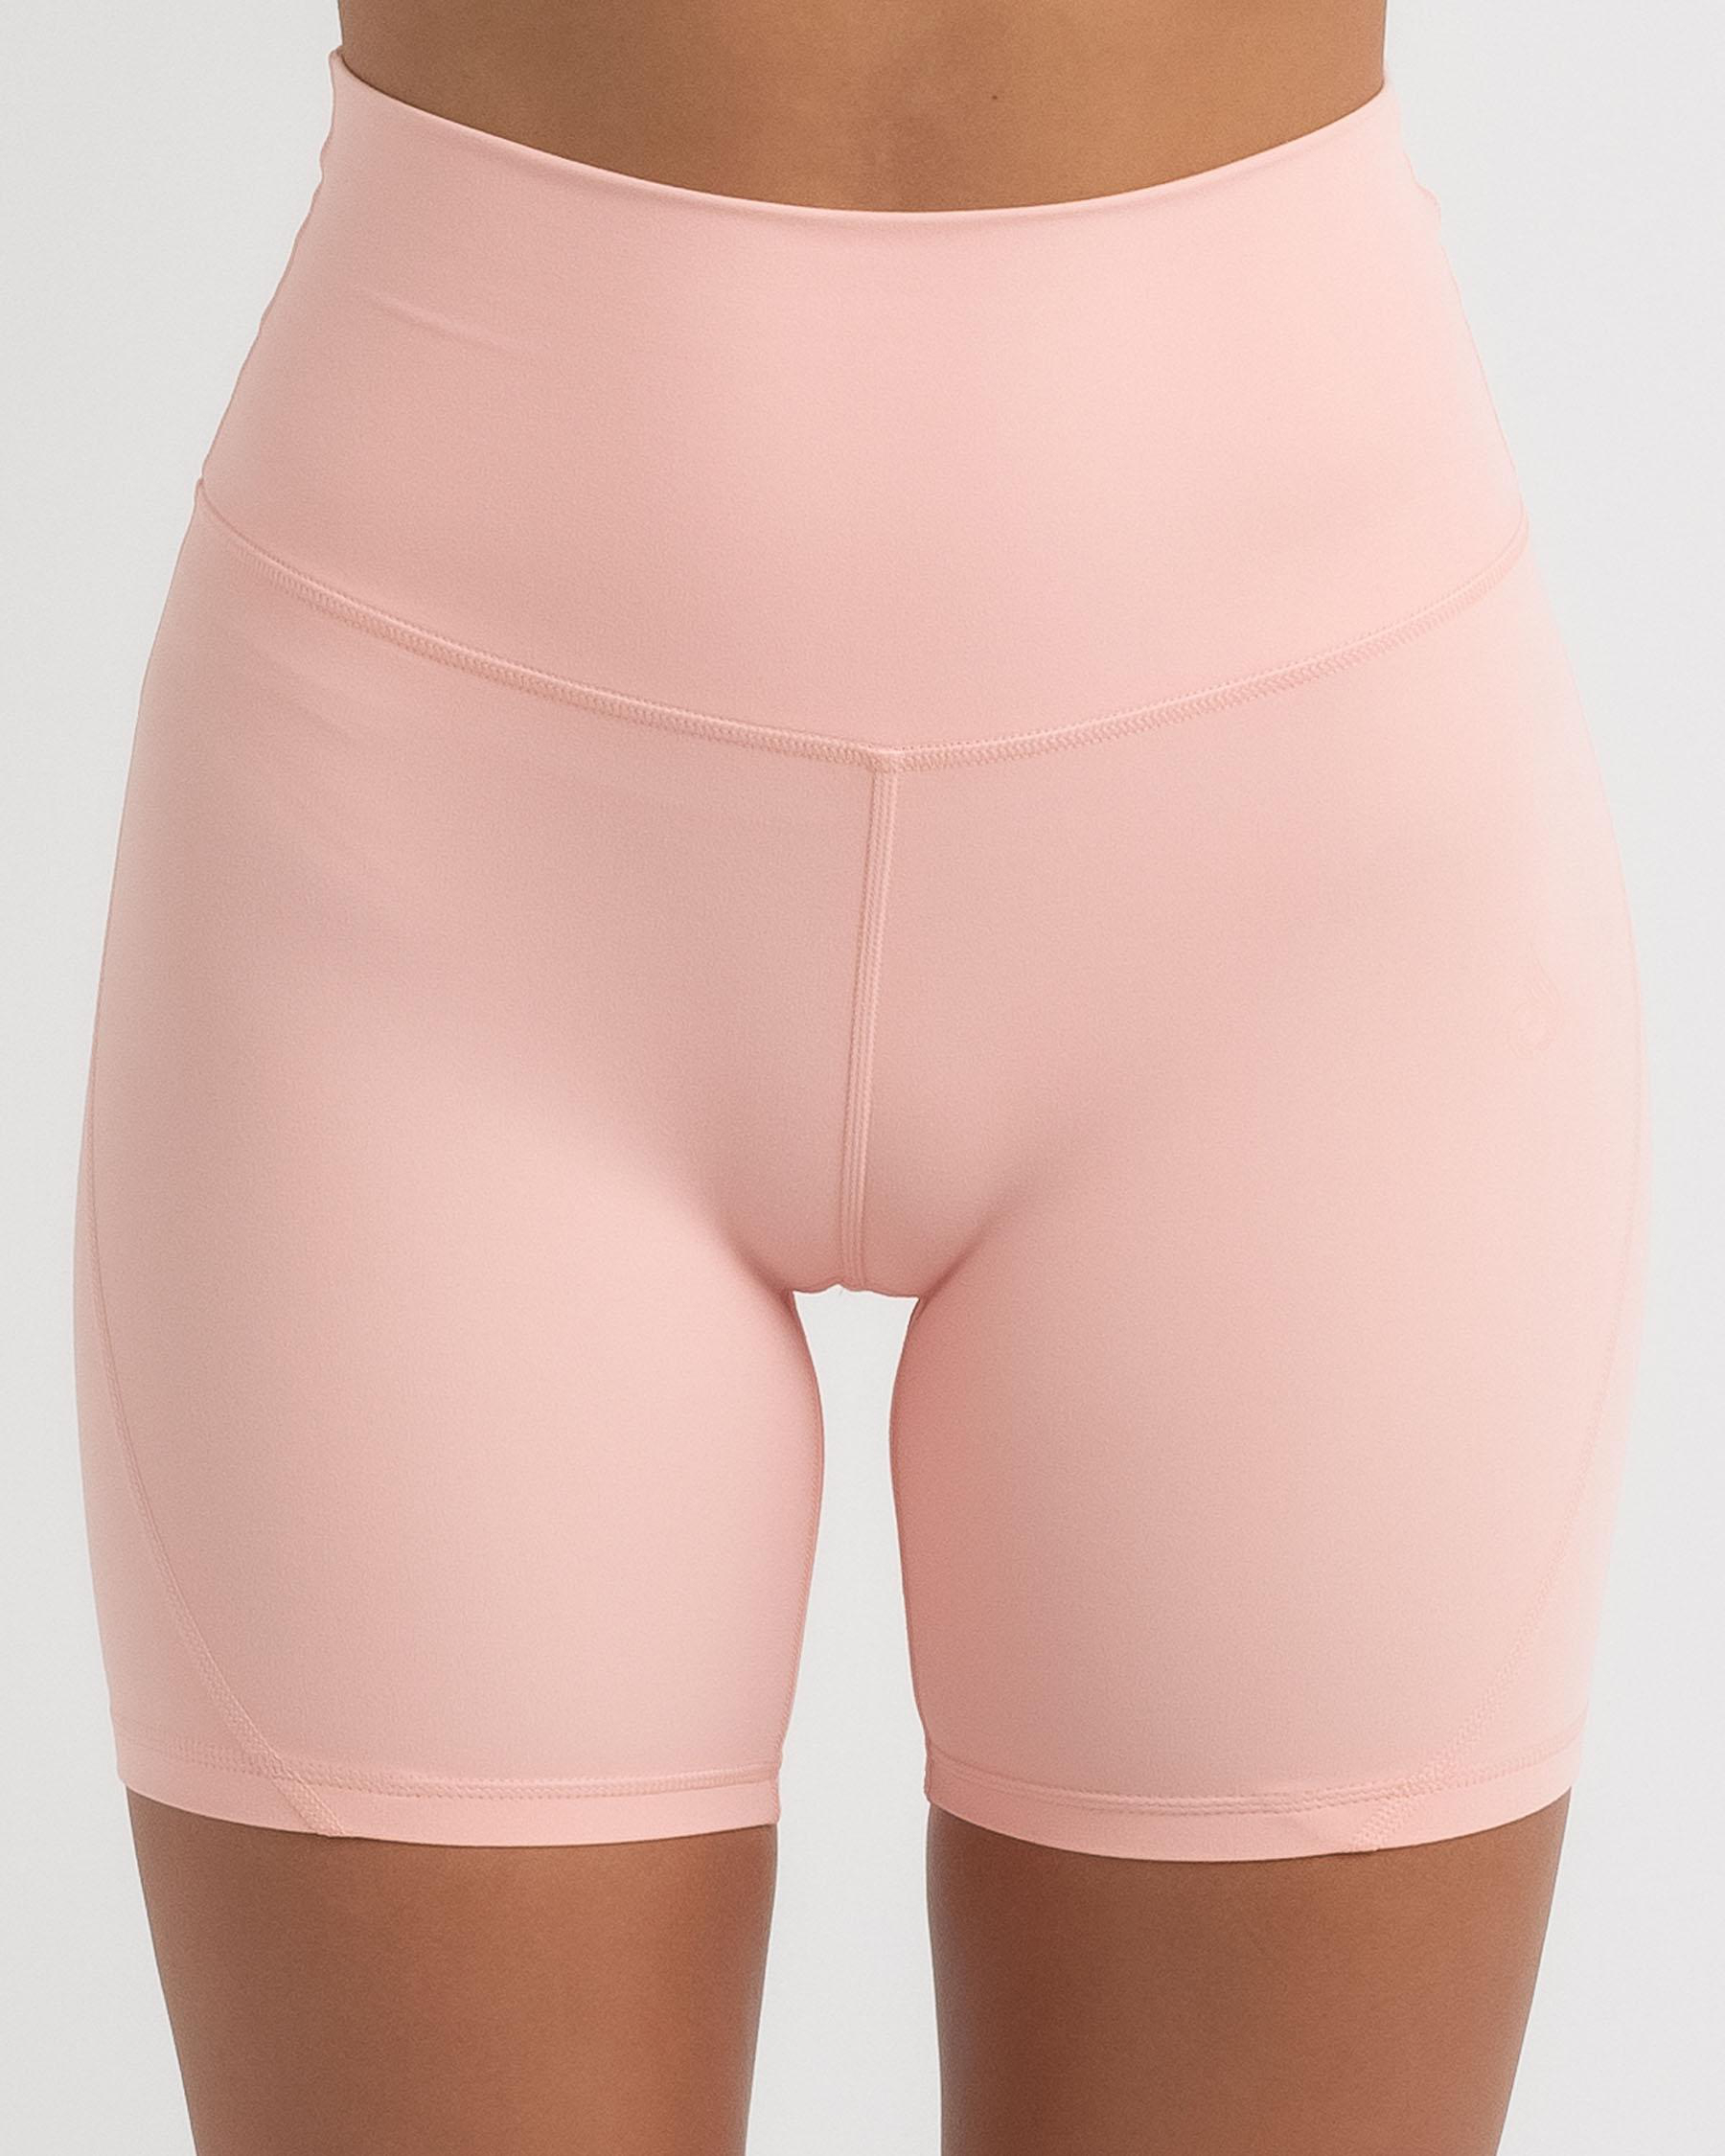 NKD Align Shorts - Pink - Ryderwear